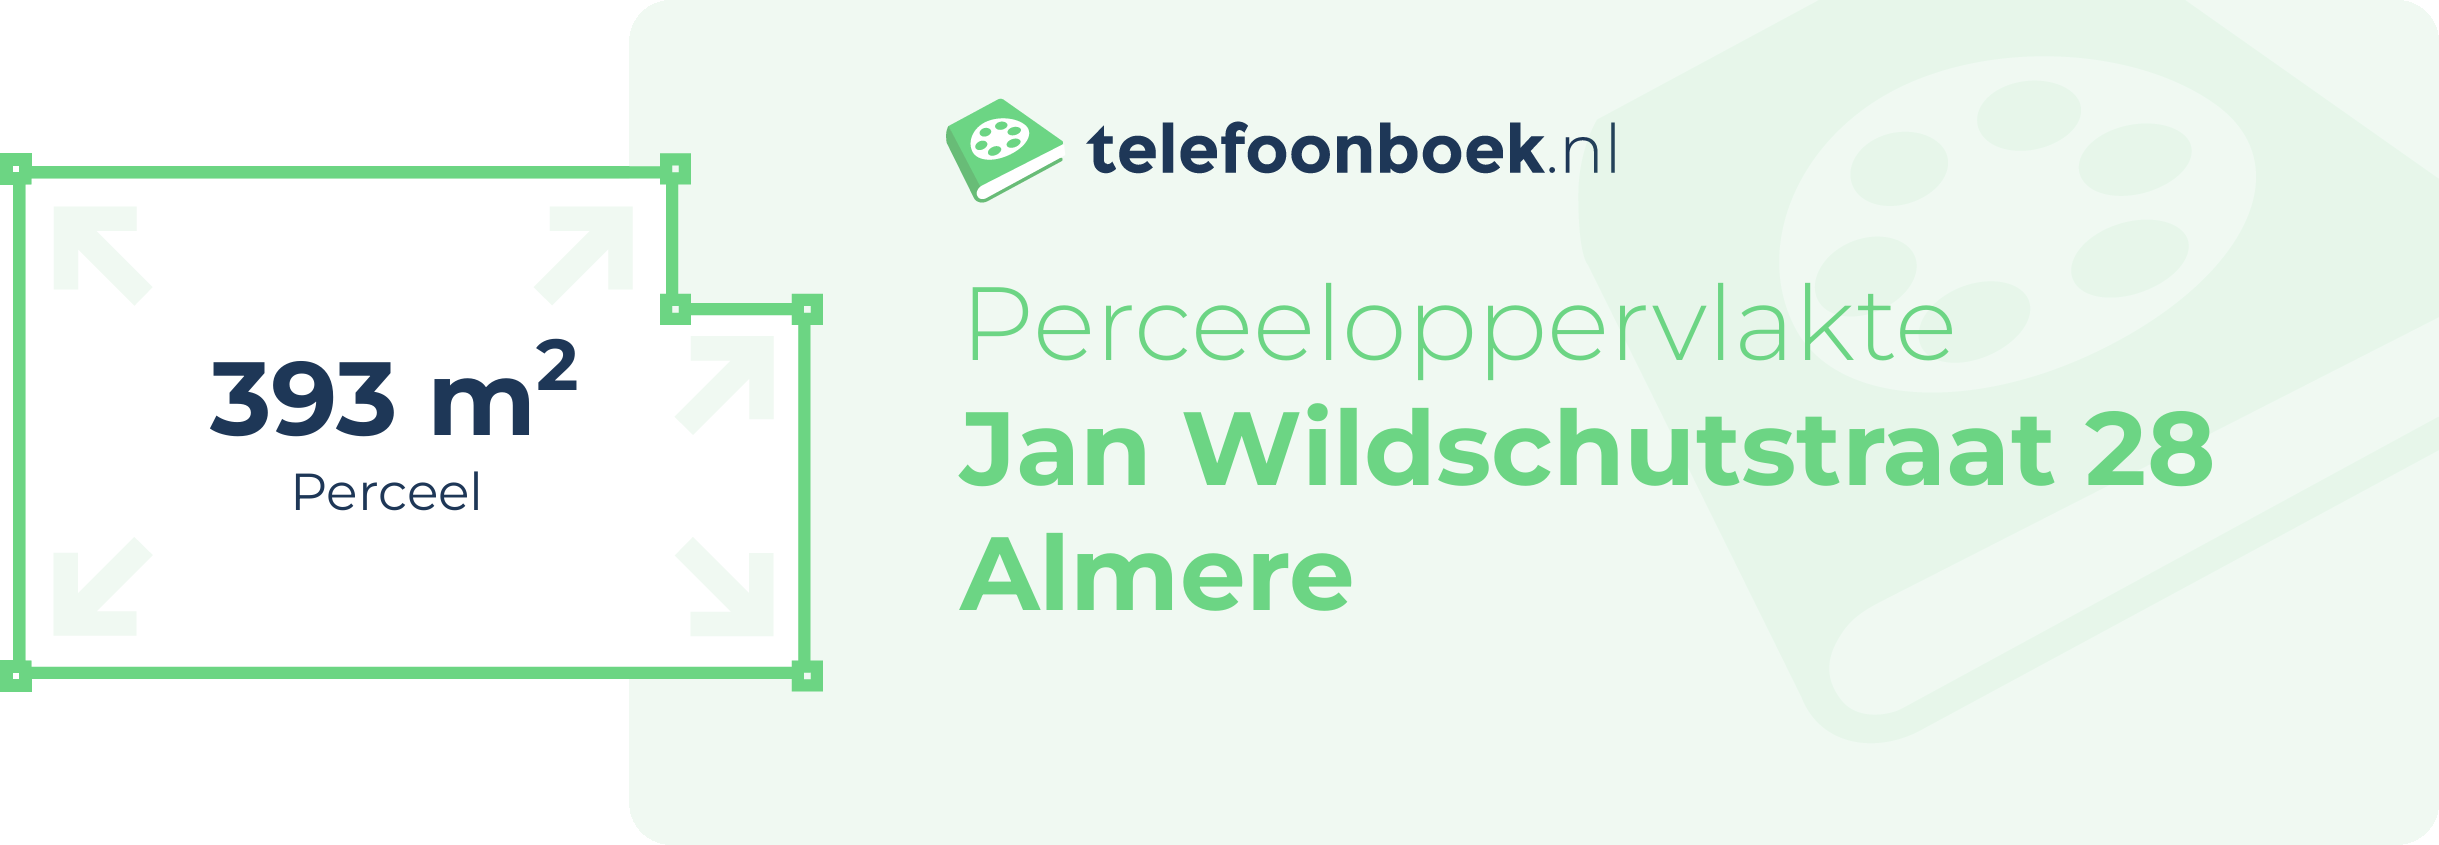 Perceeloppervlakte Jan Wildschutstraat 28 Almere